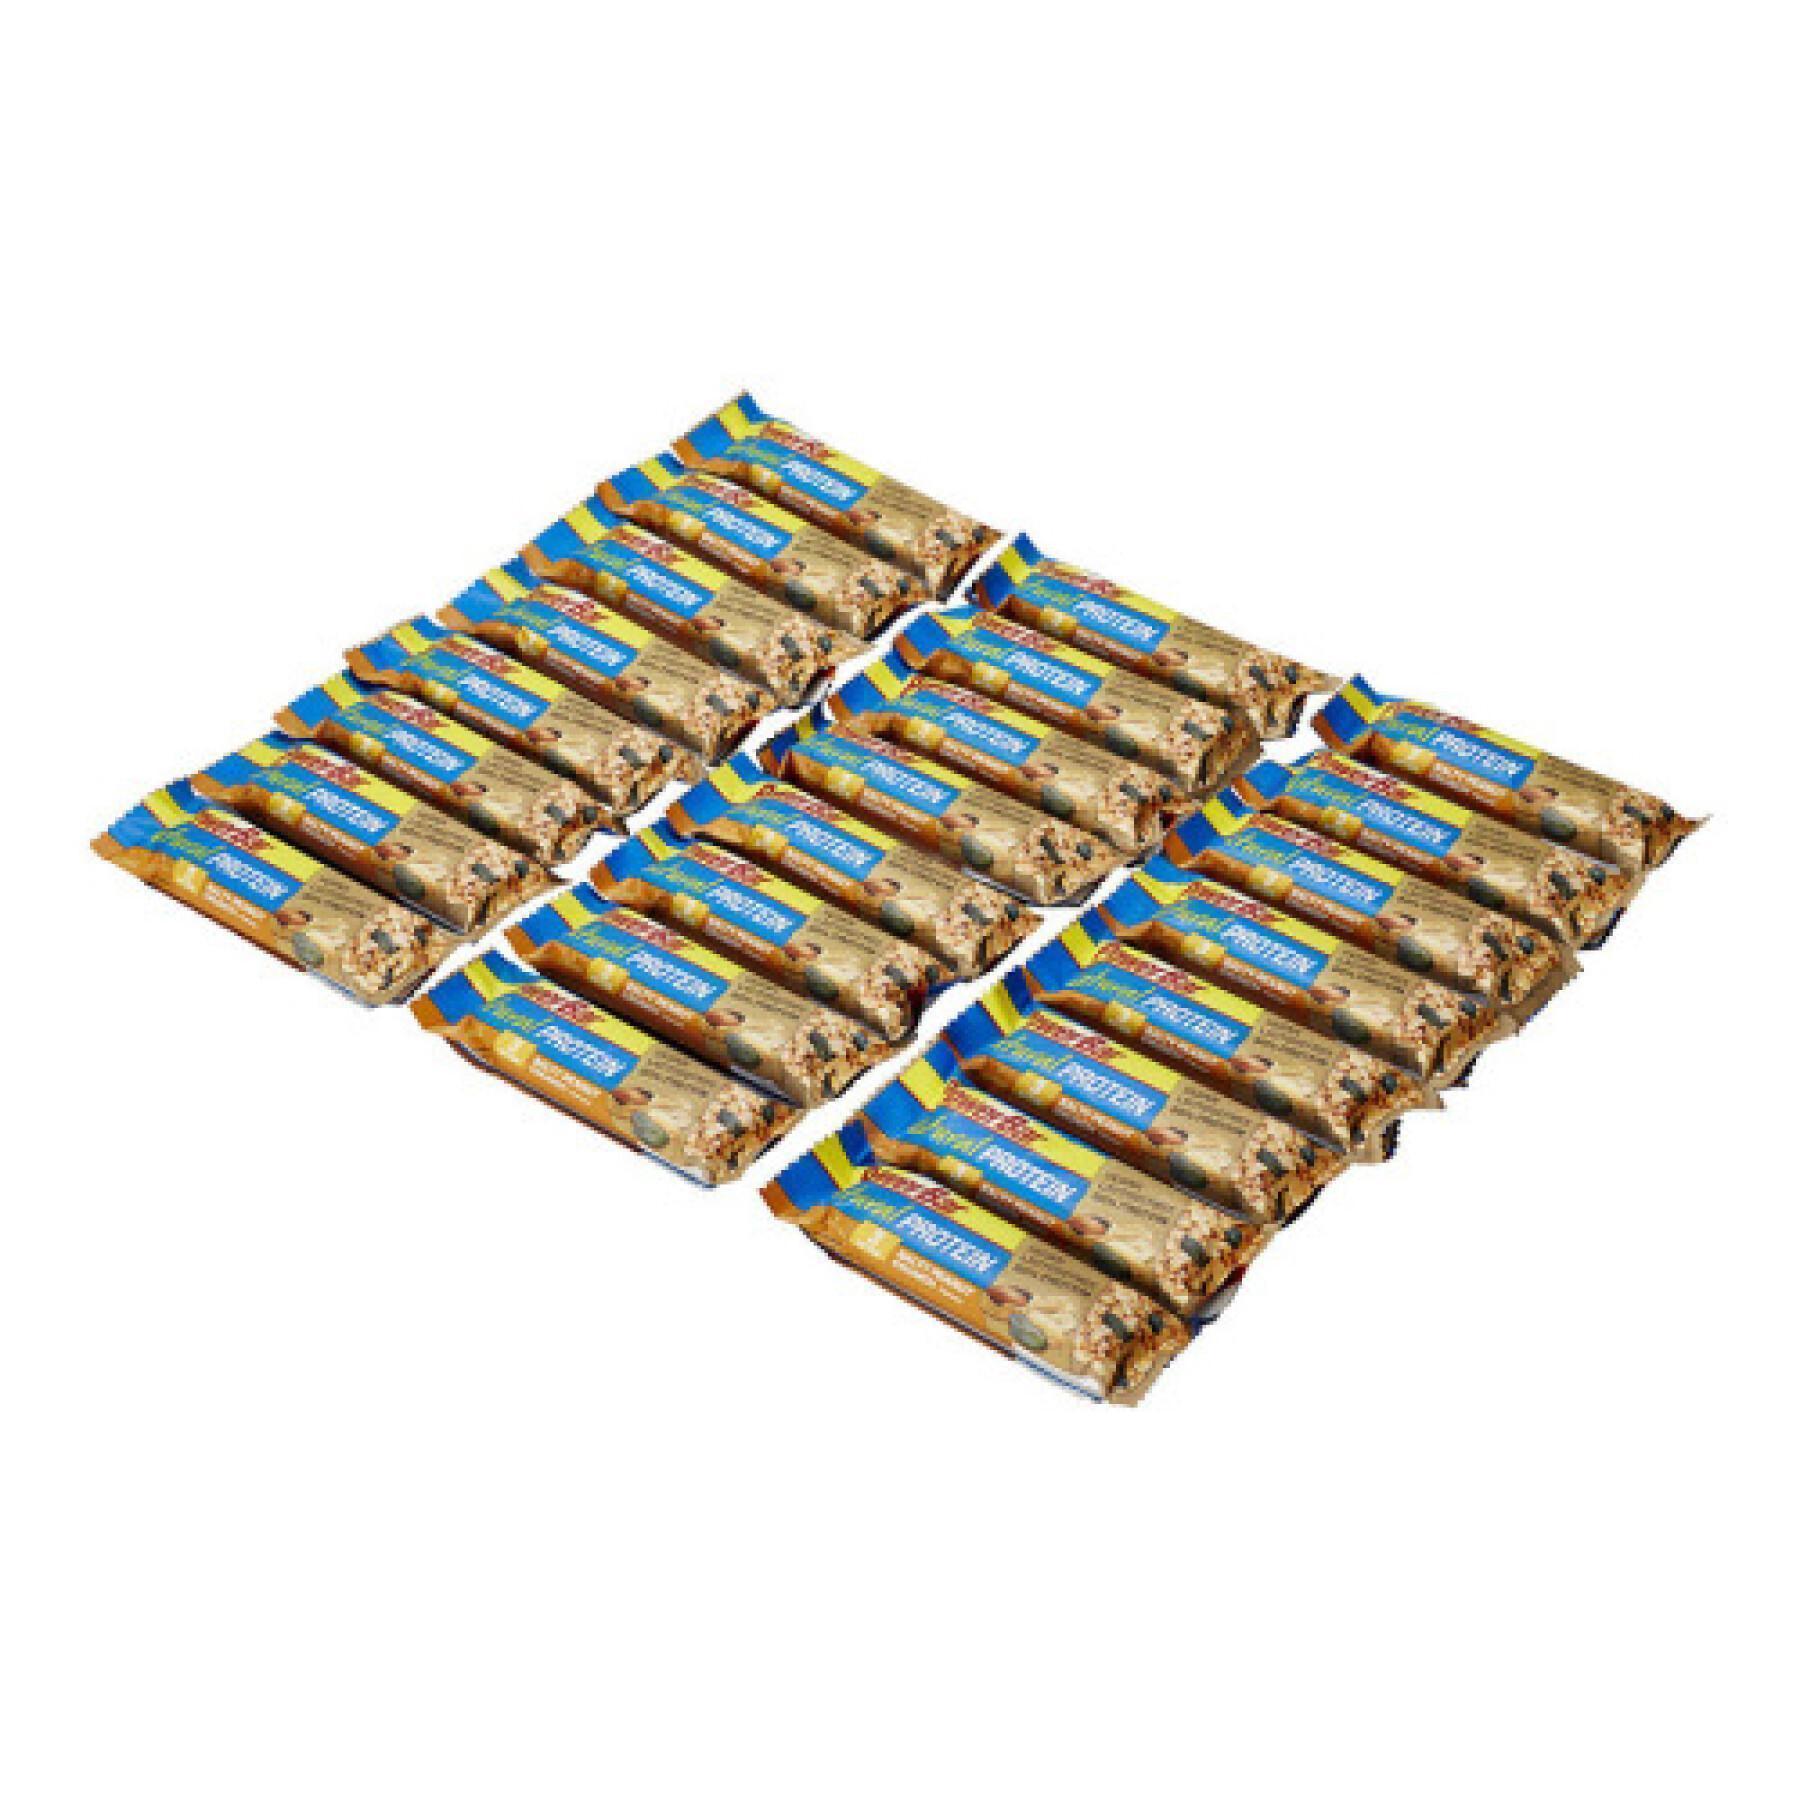 Förpackning med 24 bars PowerBar Natural Protein Vegan - Salty Peanut Crunch